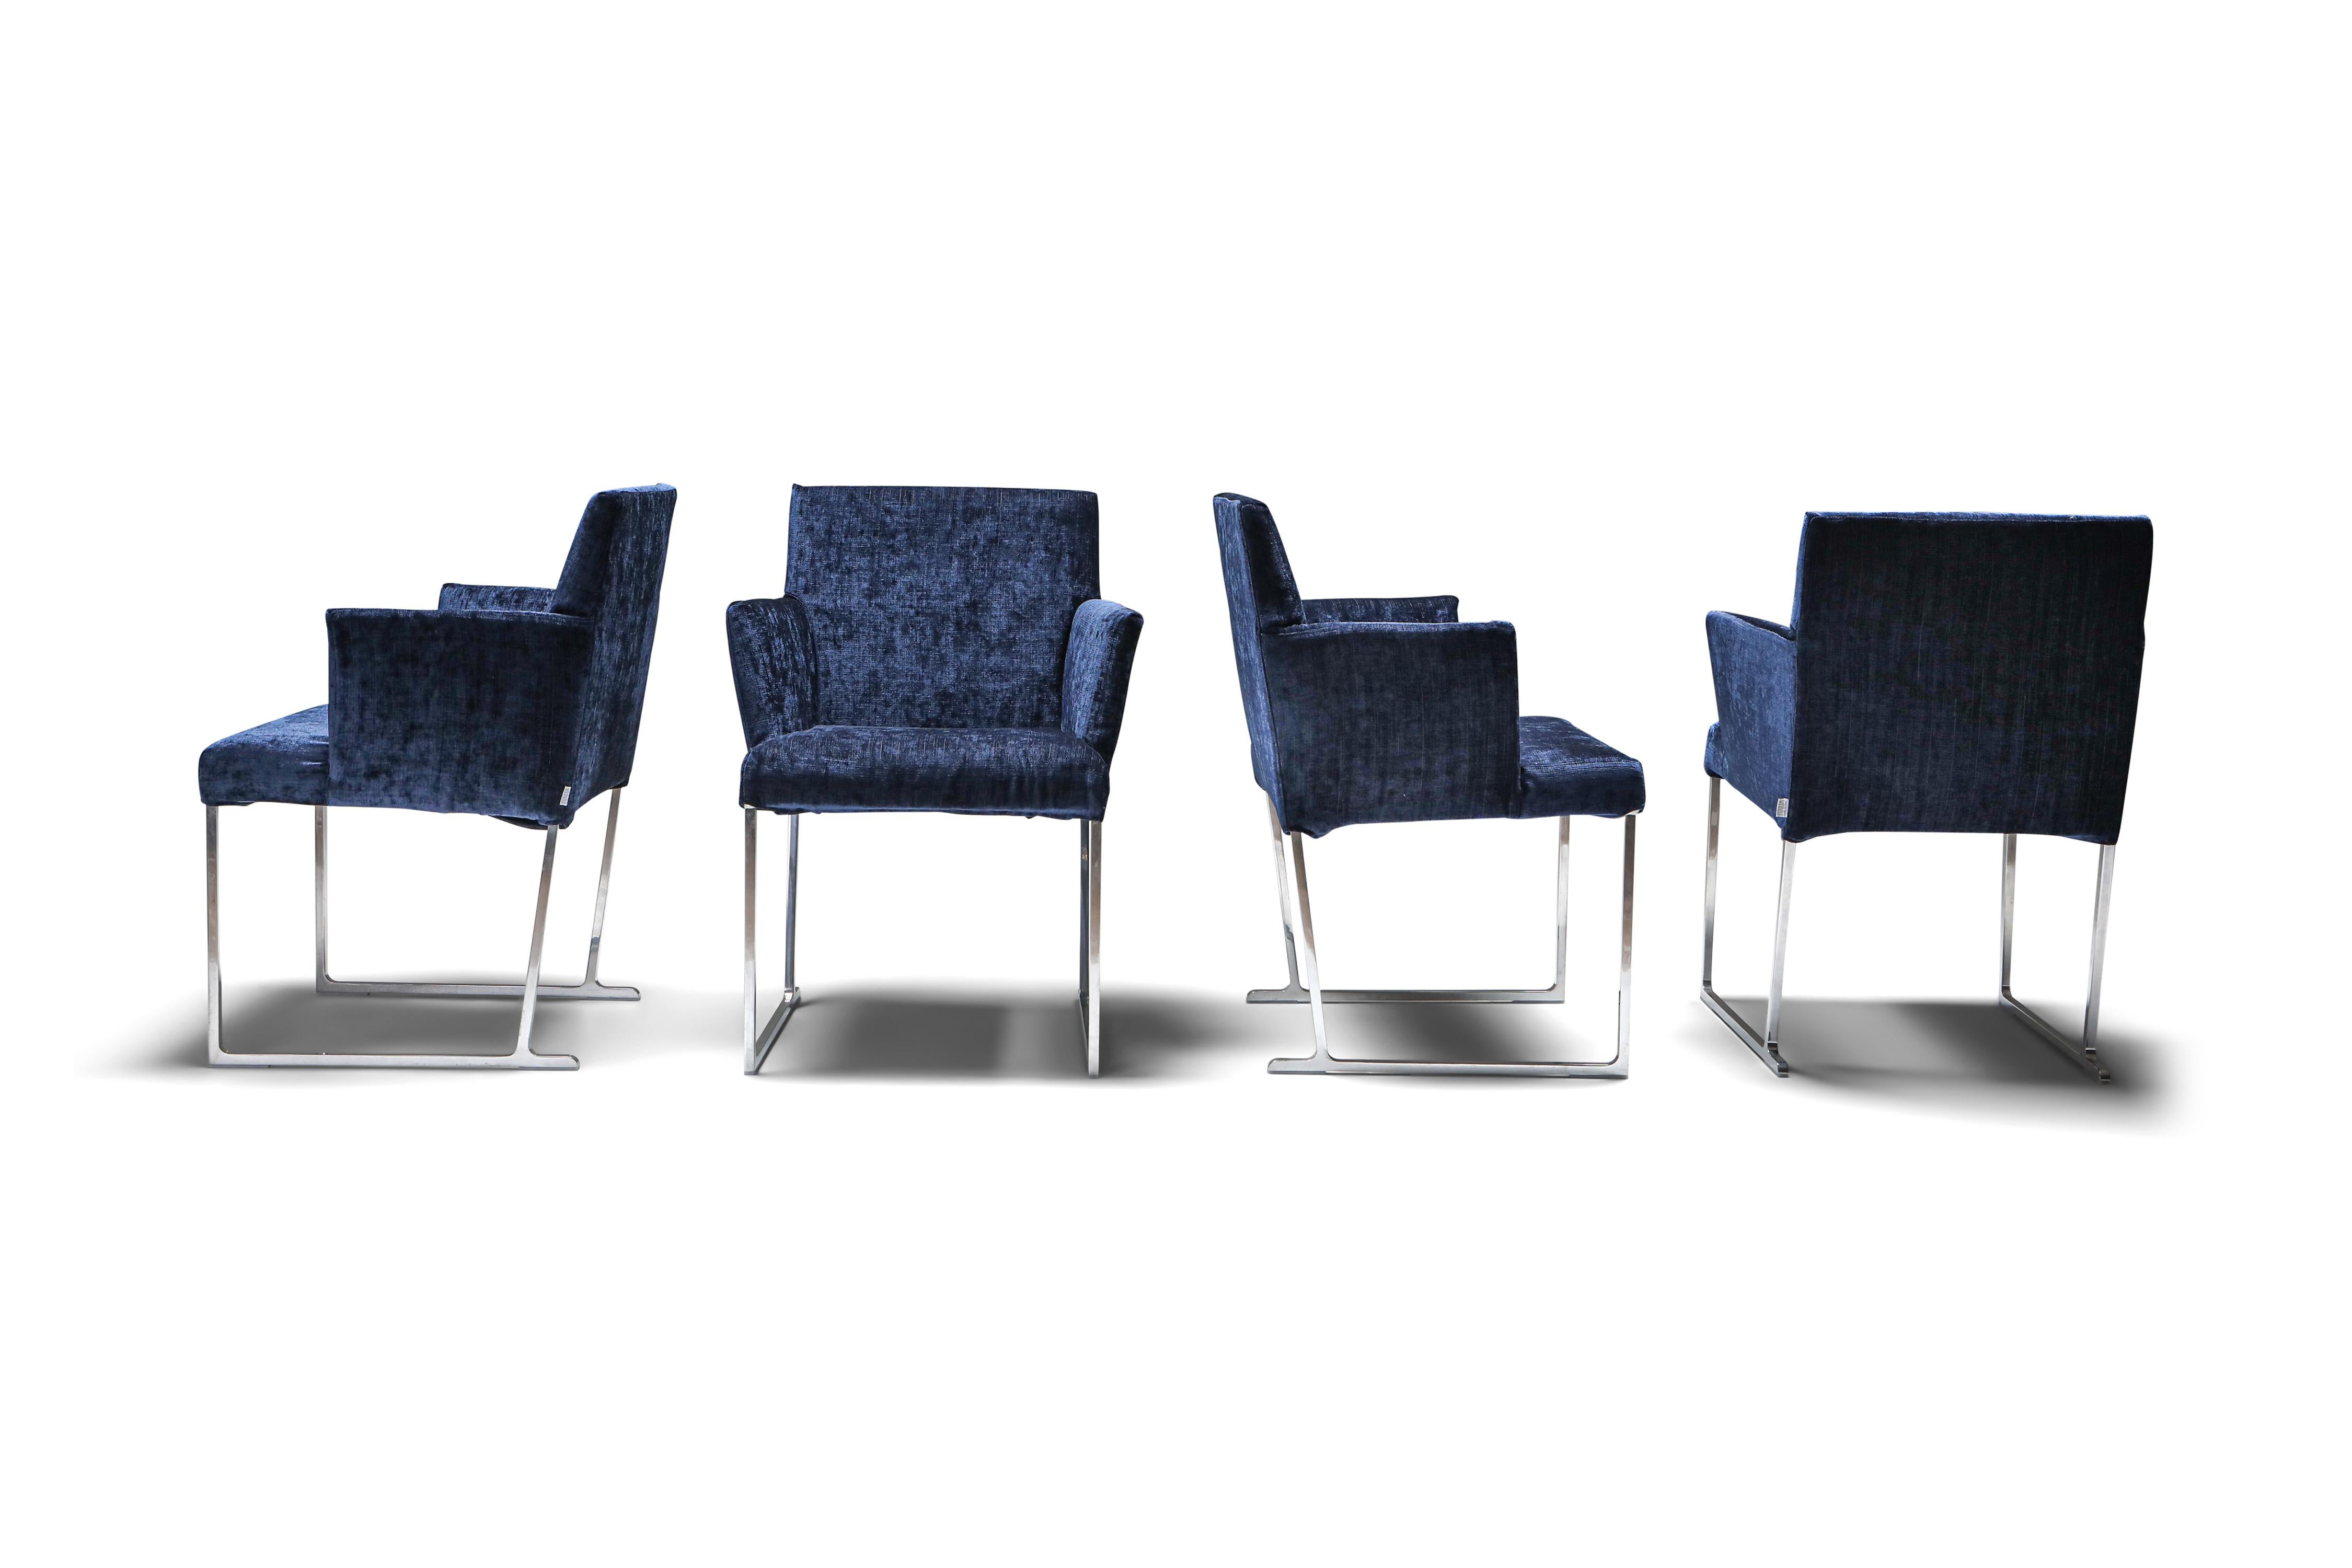 Fauteuils Solo d'Antonio Citterio en luxueux velours bleu foncé pour B&B Italia. Fabriqués sous la marque réputée B&B Italia, ces fauteuils immaculés redéfinissent le concept de siège contemporain grâce à leurs caractéristiques distinctives. Ils se